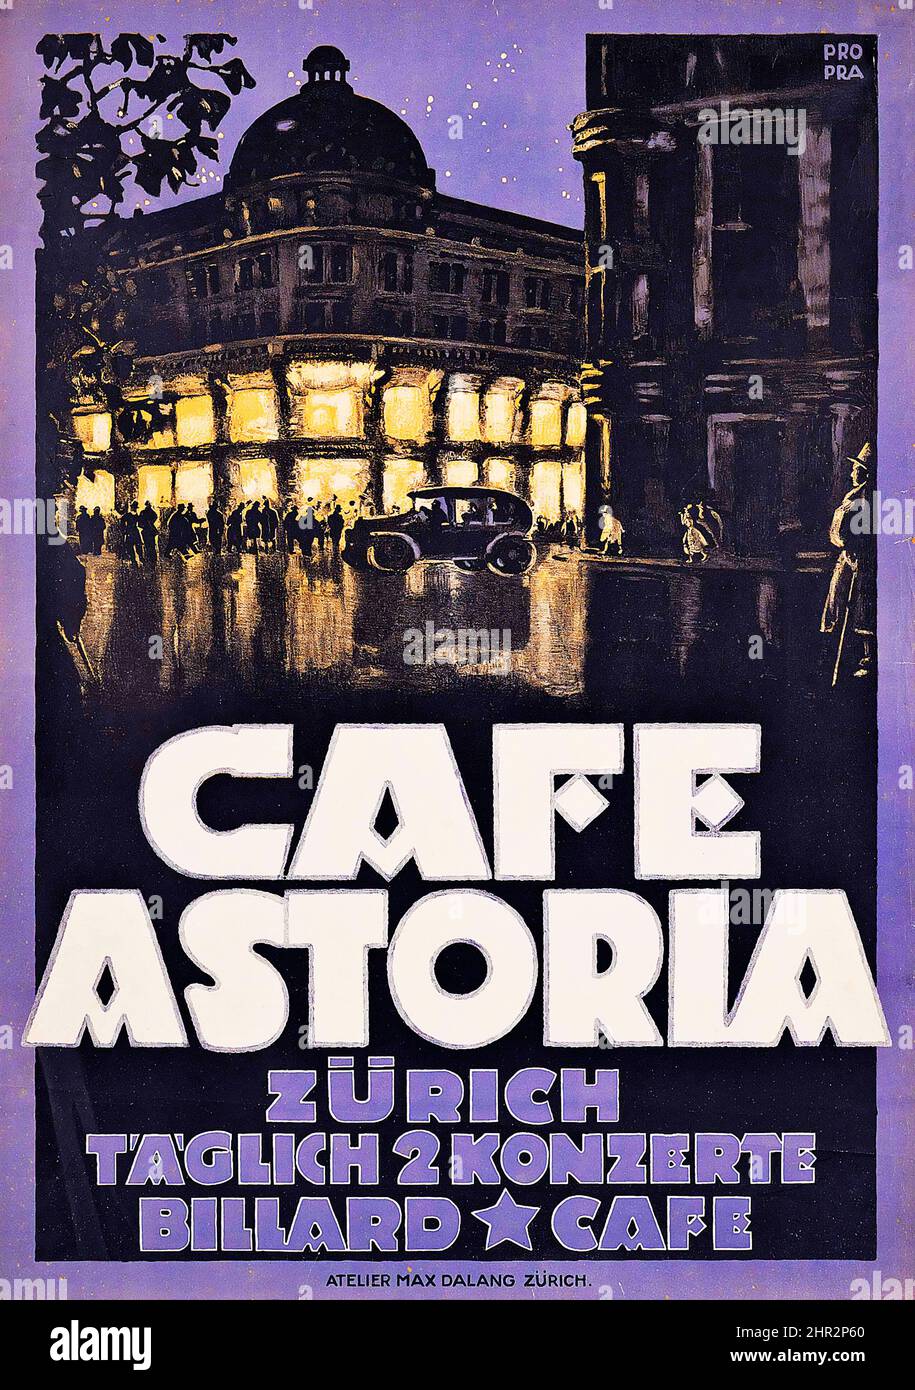 ProPra - CAFE ASTORIA, ZÜRICH, Täglich 2 konzerte, Billard, Cafe - vintage advertisement poster, c 1930. Stock Photo